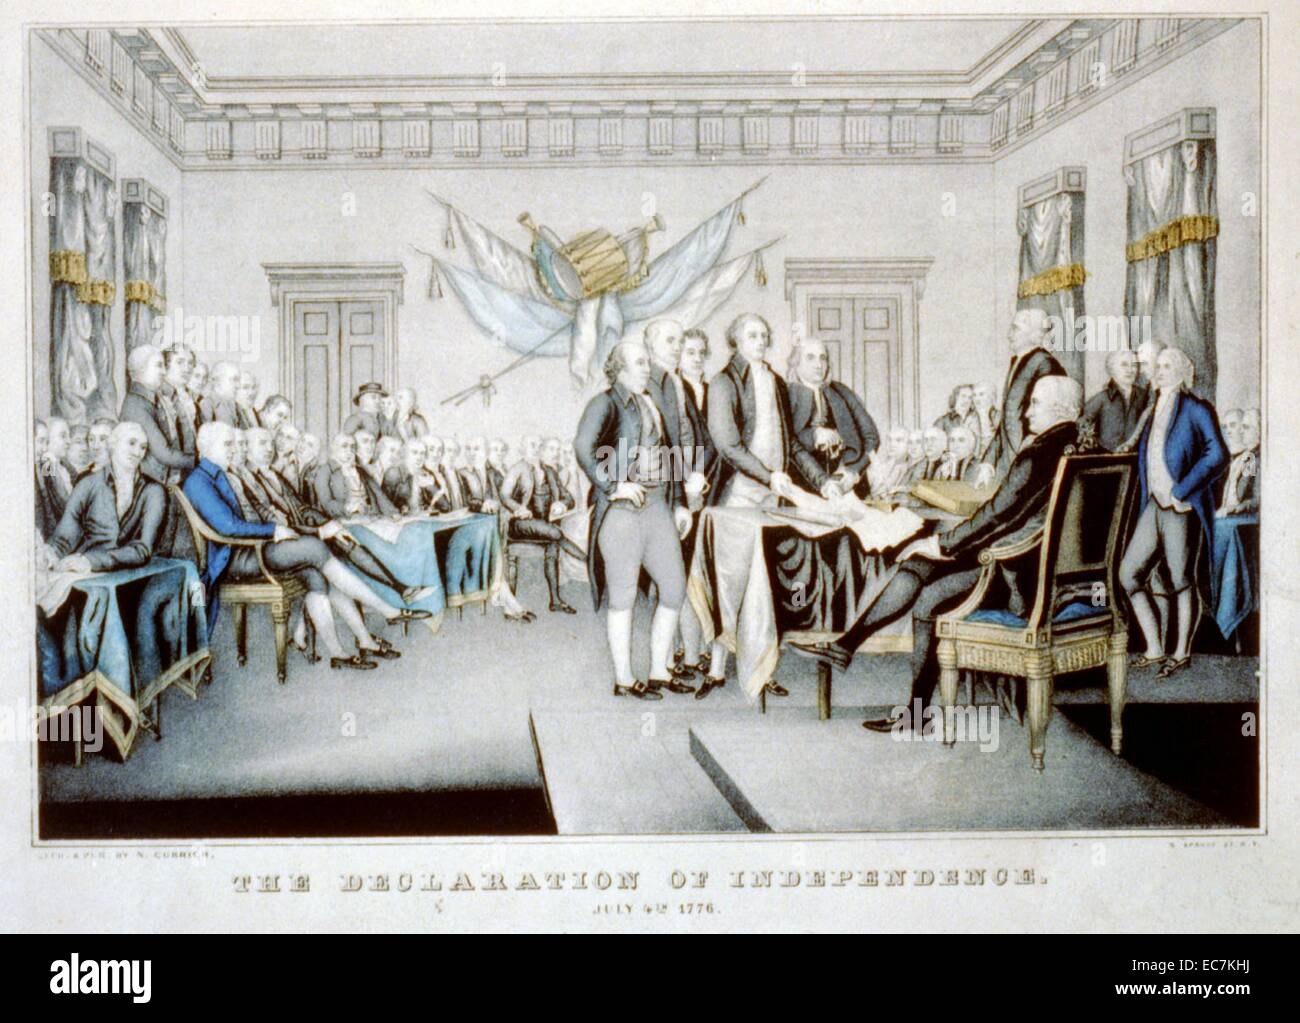 Die Erklärung der Unabhängigkeit, 4. Juli 1776. Dies war eine Erklärung der Kontinentale Kongress, verkündet, dass die dreizehn amerikanischen Kolonien, dann im Krieg mit Großbritannien, sich selbst als 13 neuen unabhängigen souveränen Staaten angesehen und waren nicht mehr ein Teil des Britischen Empire. Stockfoto